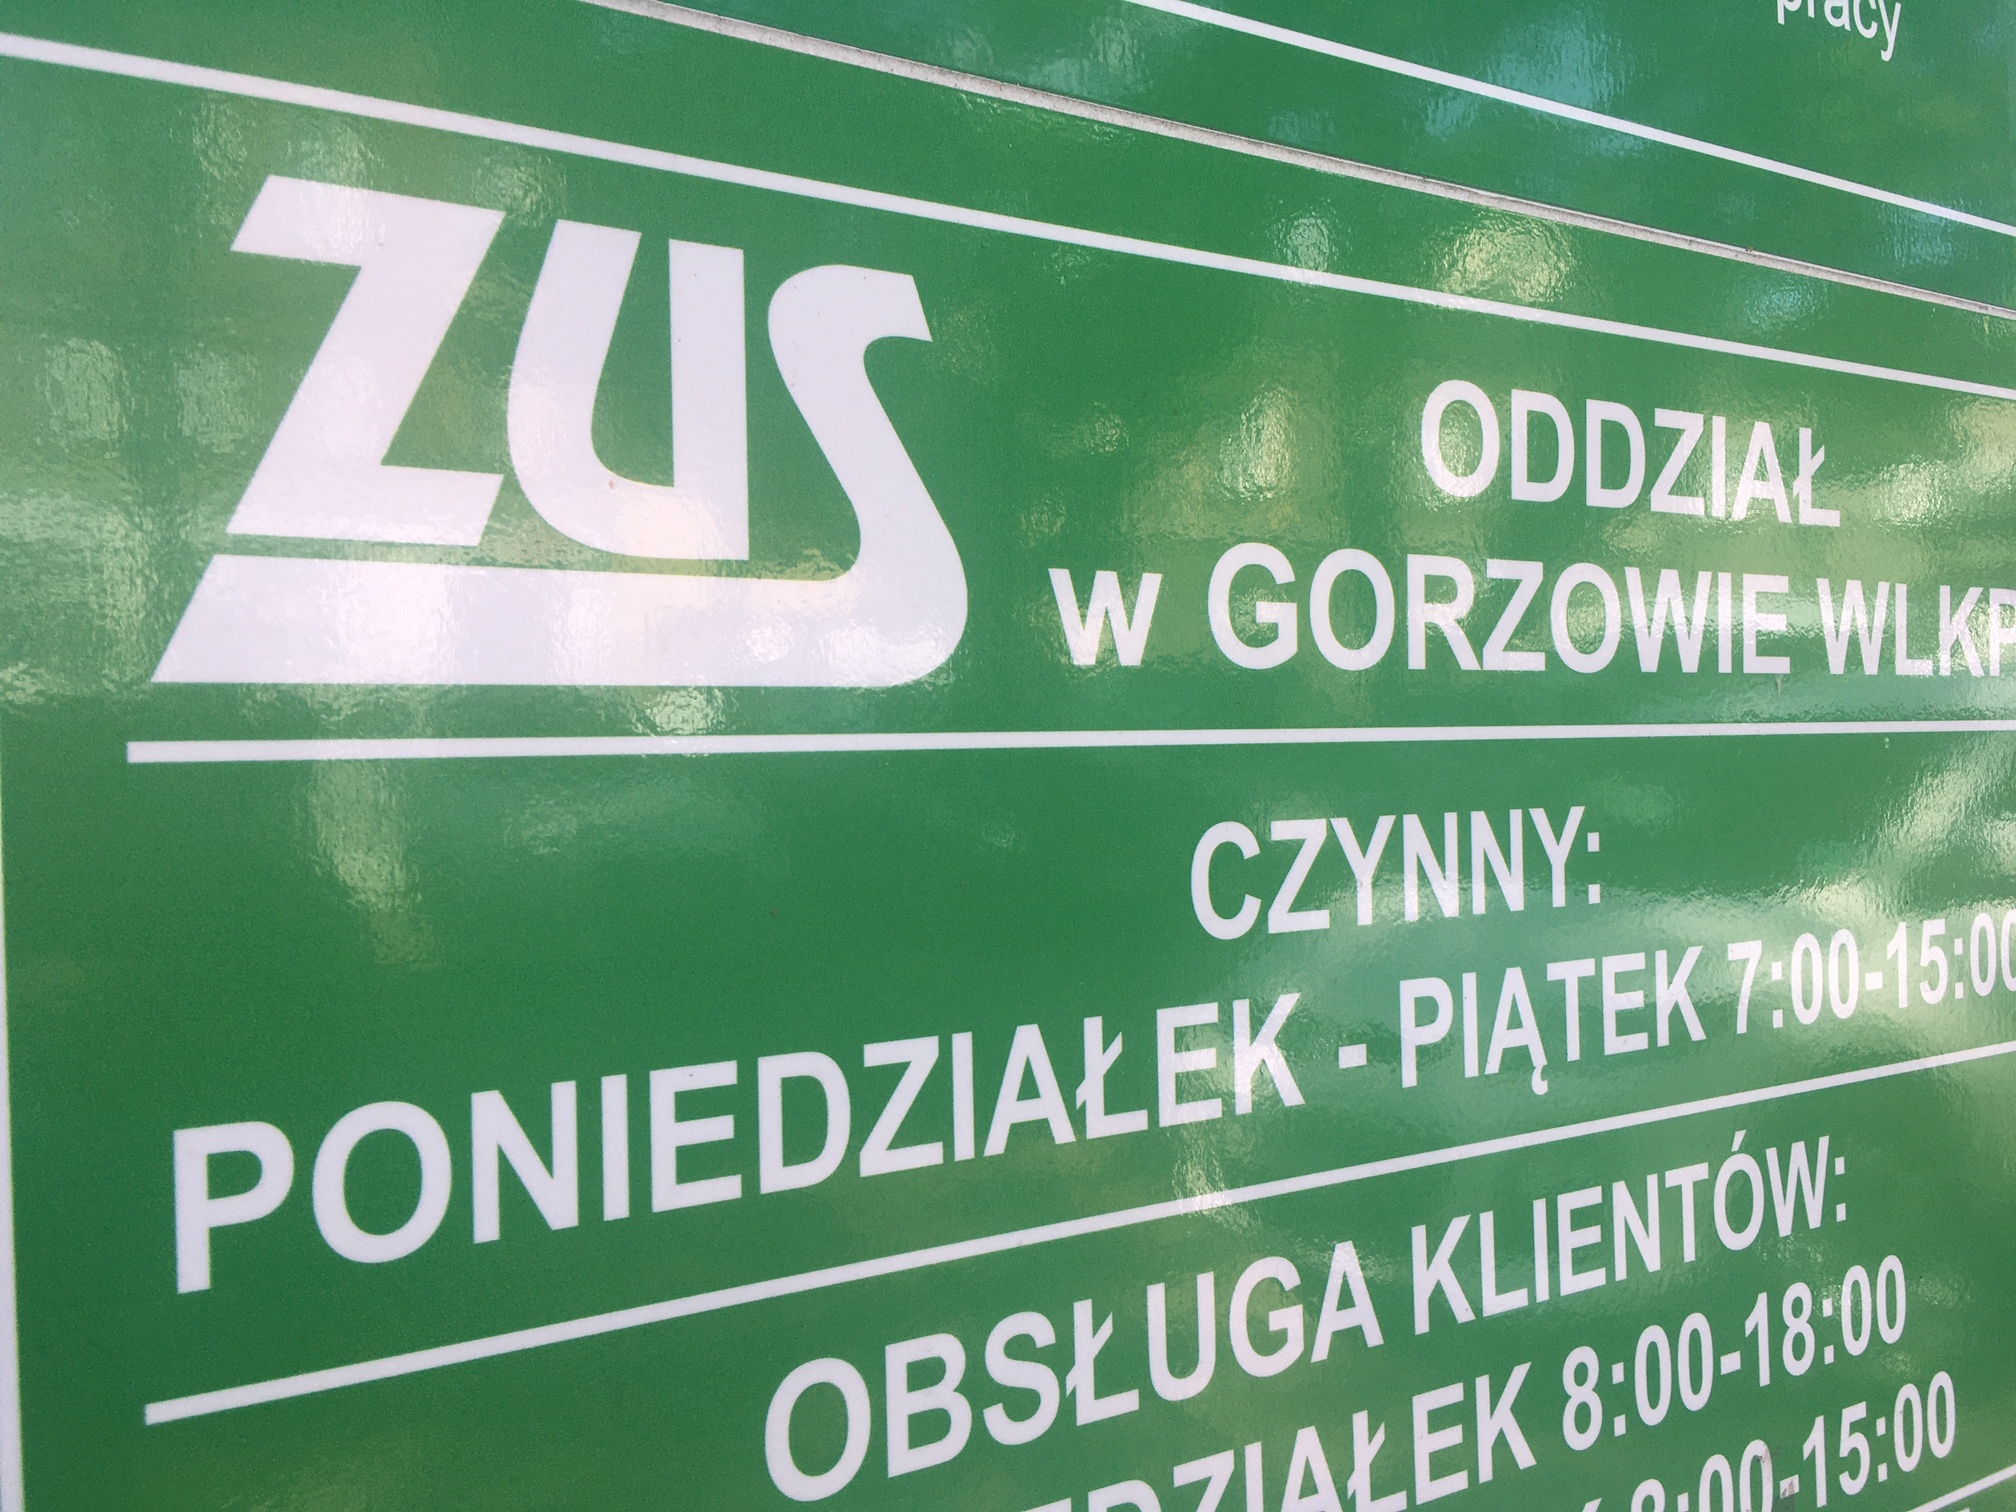 ZUS w Gorzowie - instalacja pętli indukcyjnych na sali obsługi klienta